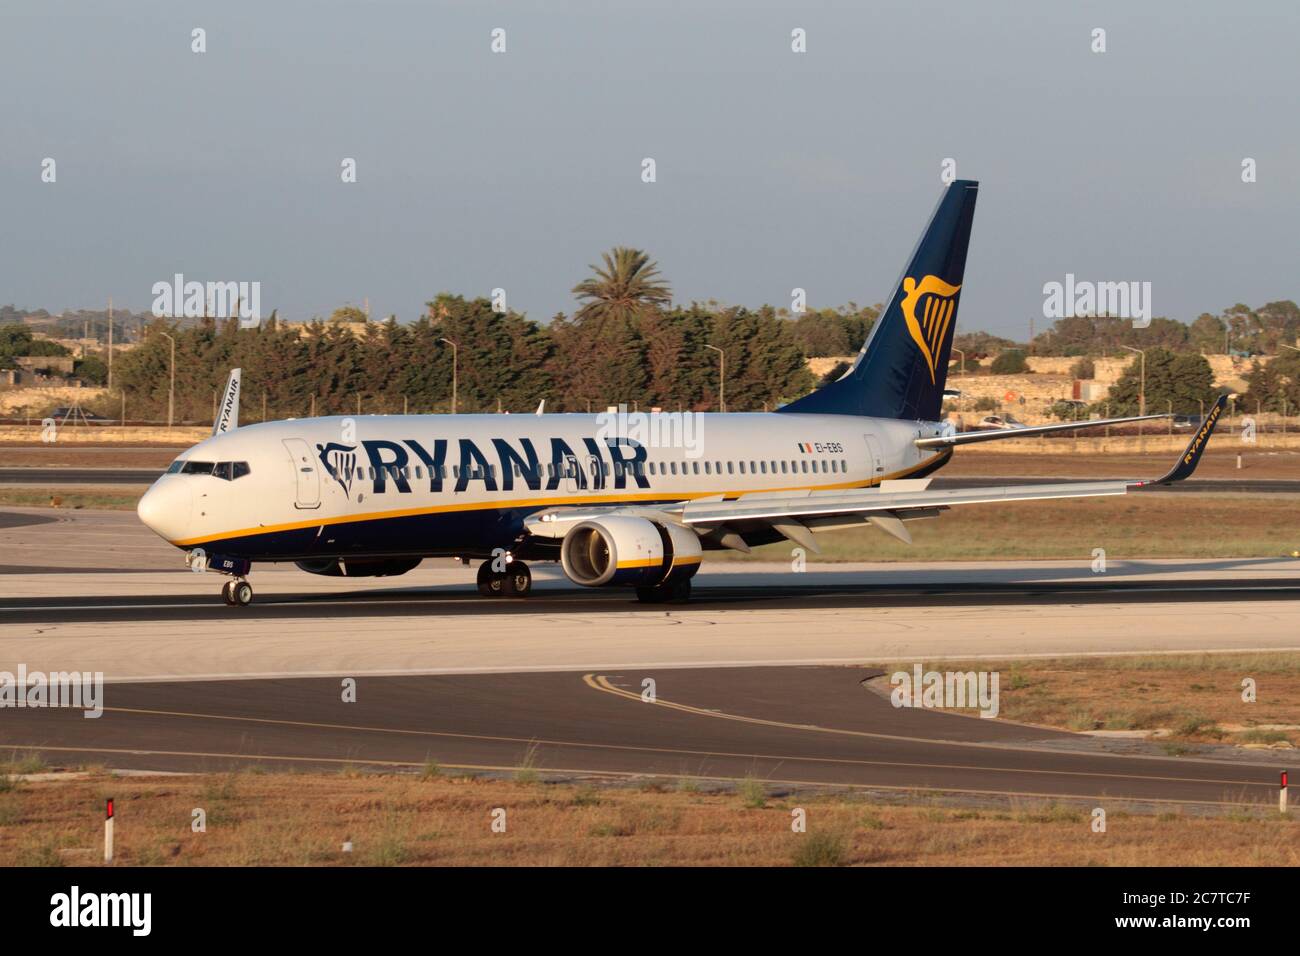 Ryanair avión. Boeing 737-800 avión de pasajeros volado por la aerolínea de bajo costo Ryan Air en la pista de aterrizaje después de llegar a Malta Foto de stock